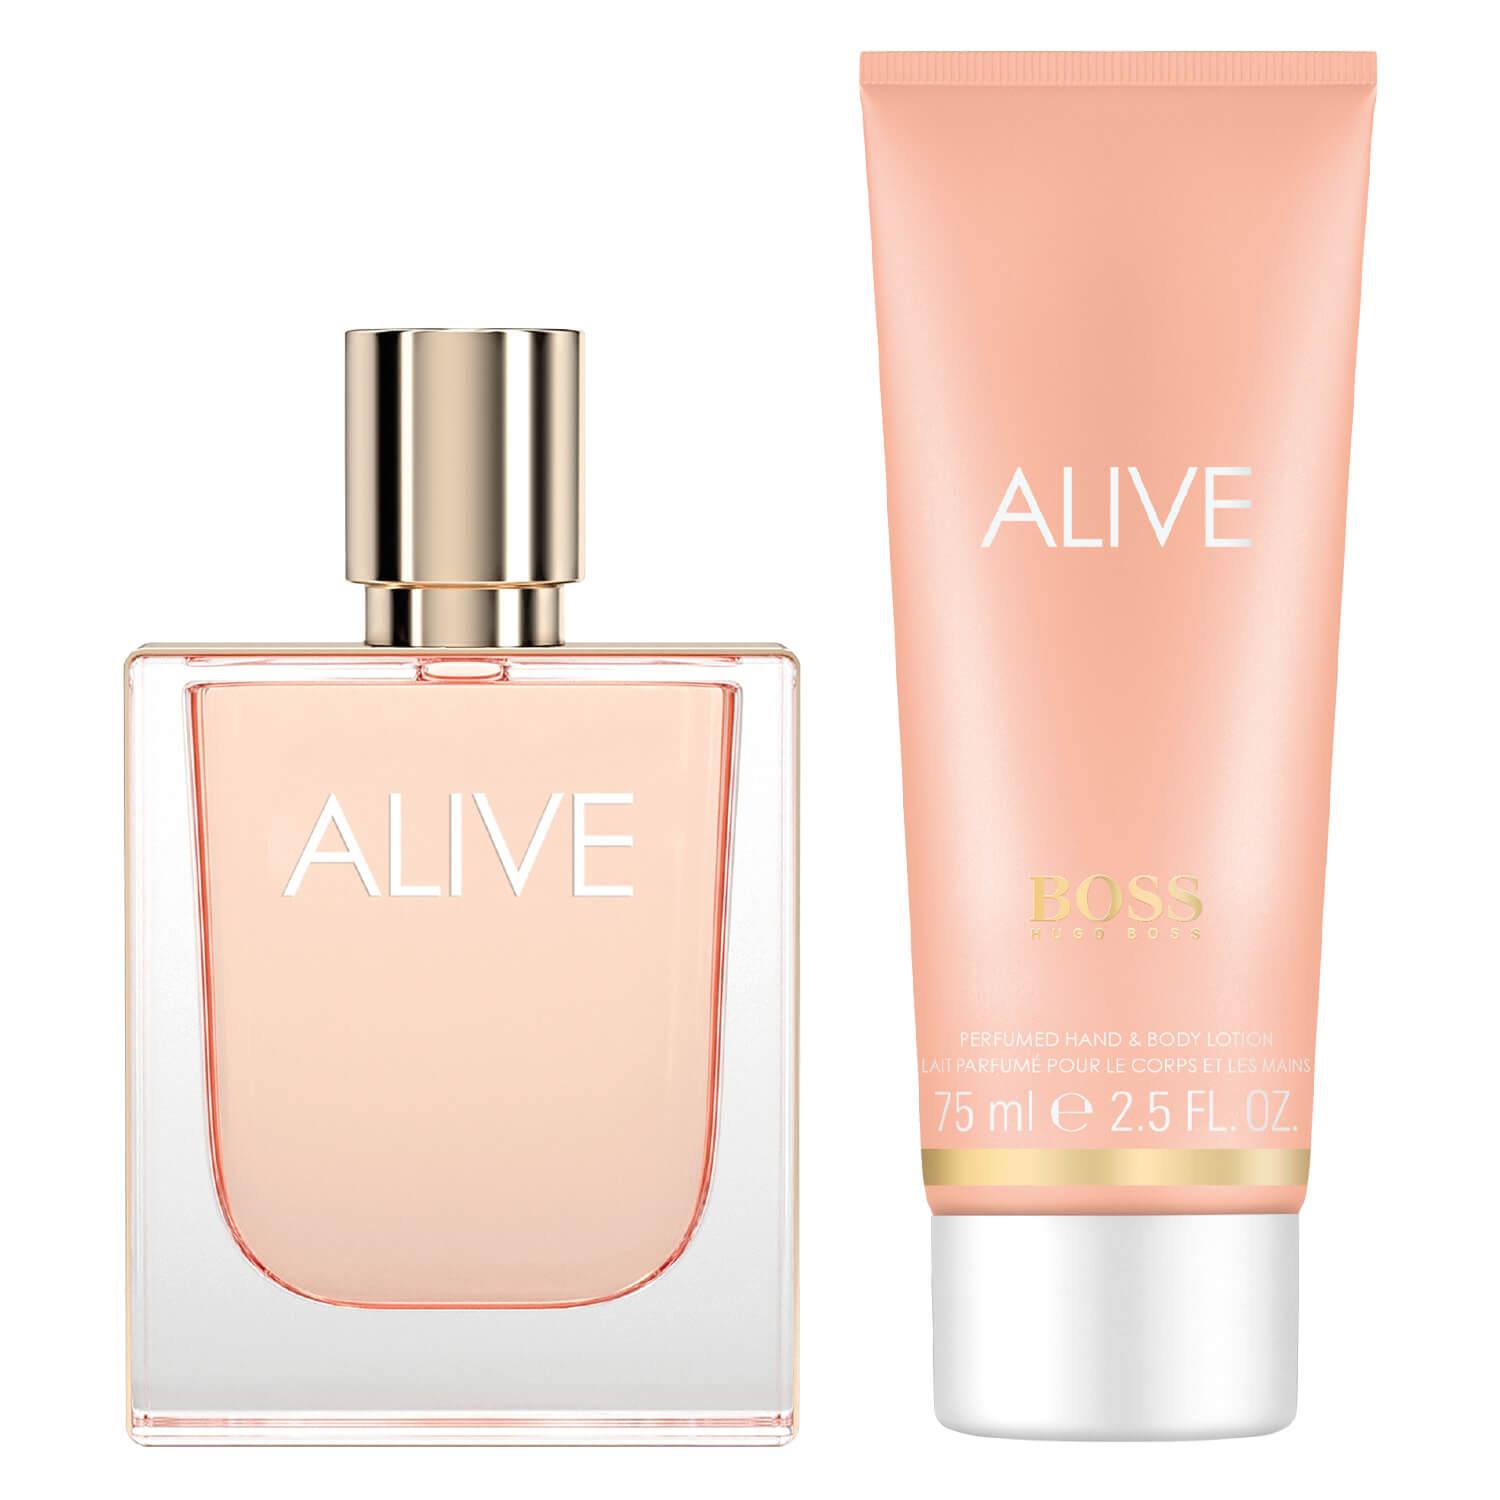 Boss Alive - Eau de Parfum Set